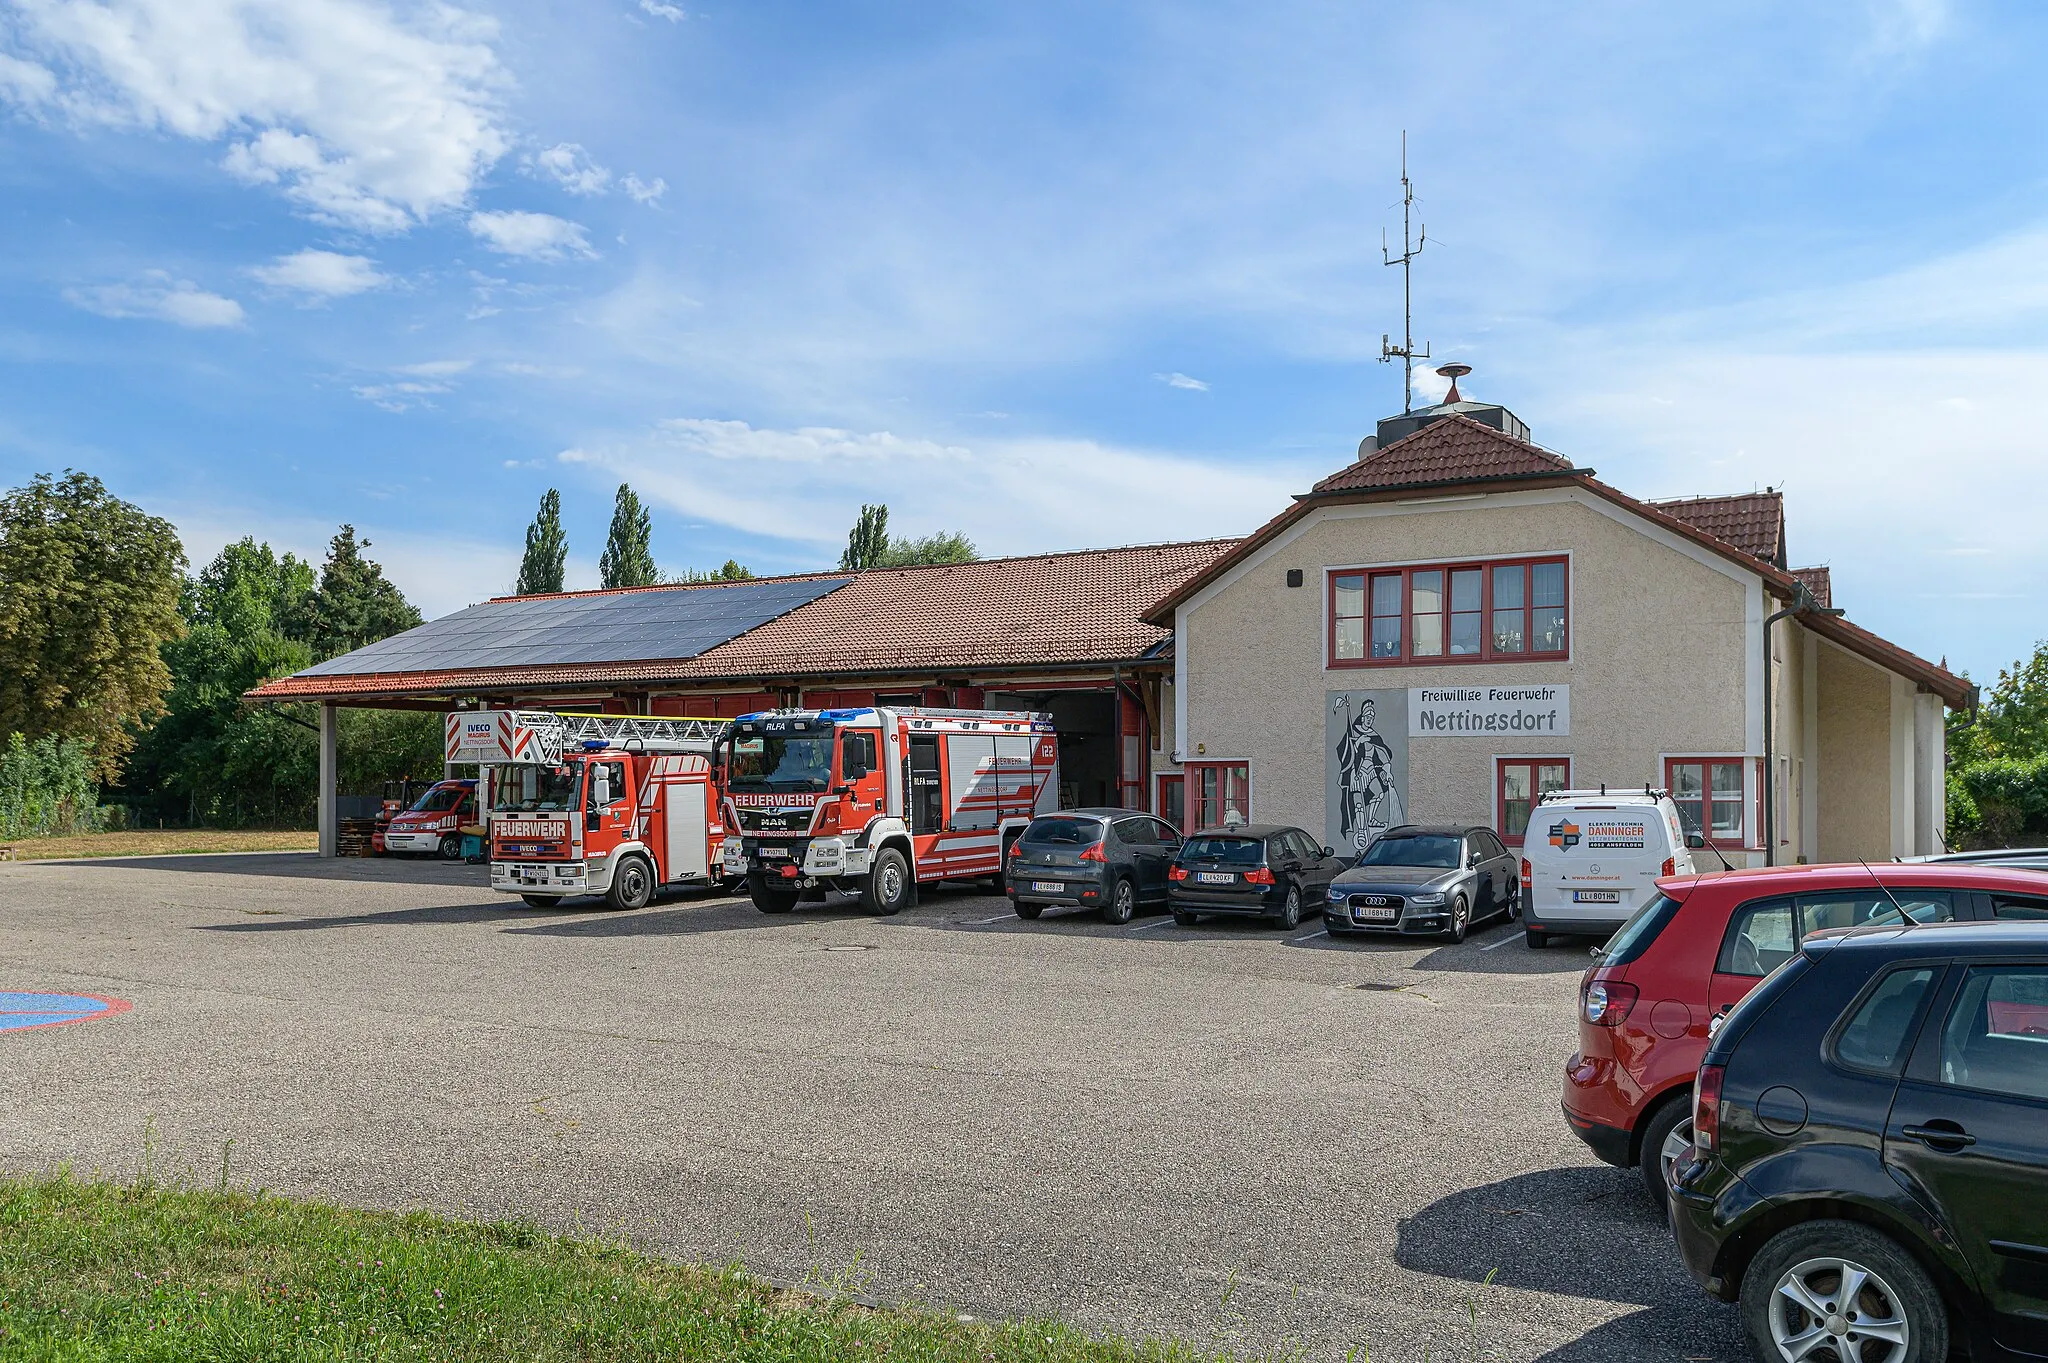 Photo showing: Auf dem gemeindegebiet von Ansfelden gibt es 4 Feuerwehren. Eine davon ist die Freiwillige Feuerwehr  Nettingsdorf. Das Feuerwehrhaus steht in der Katastralgemeinde Kremsdorf.